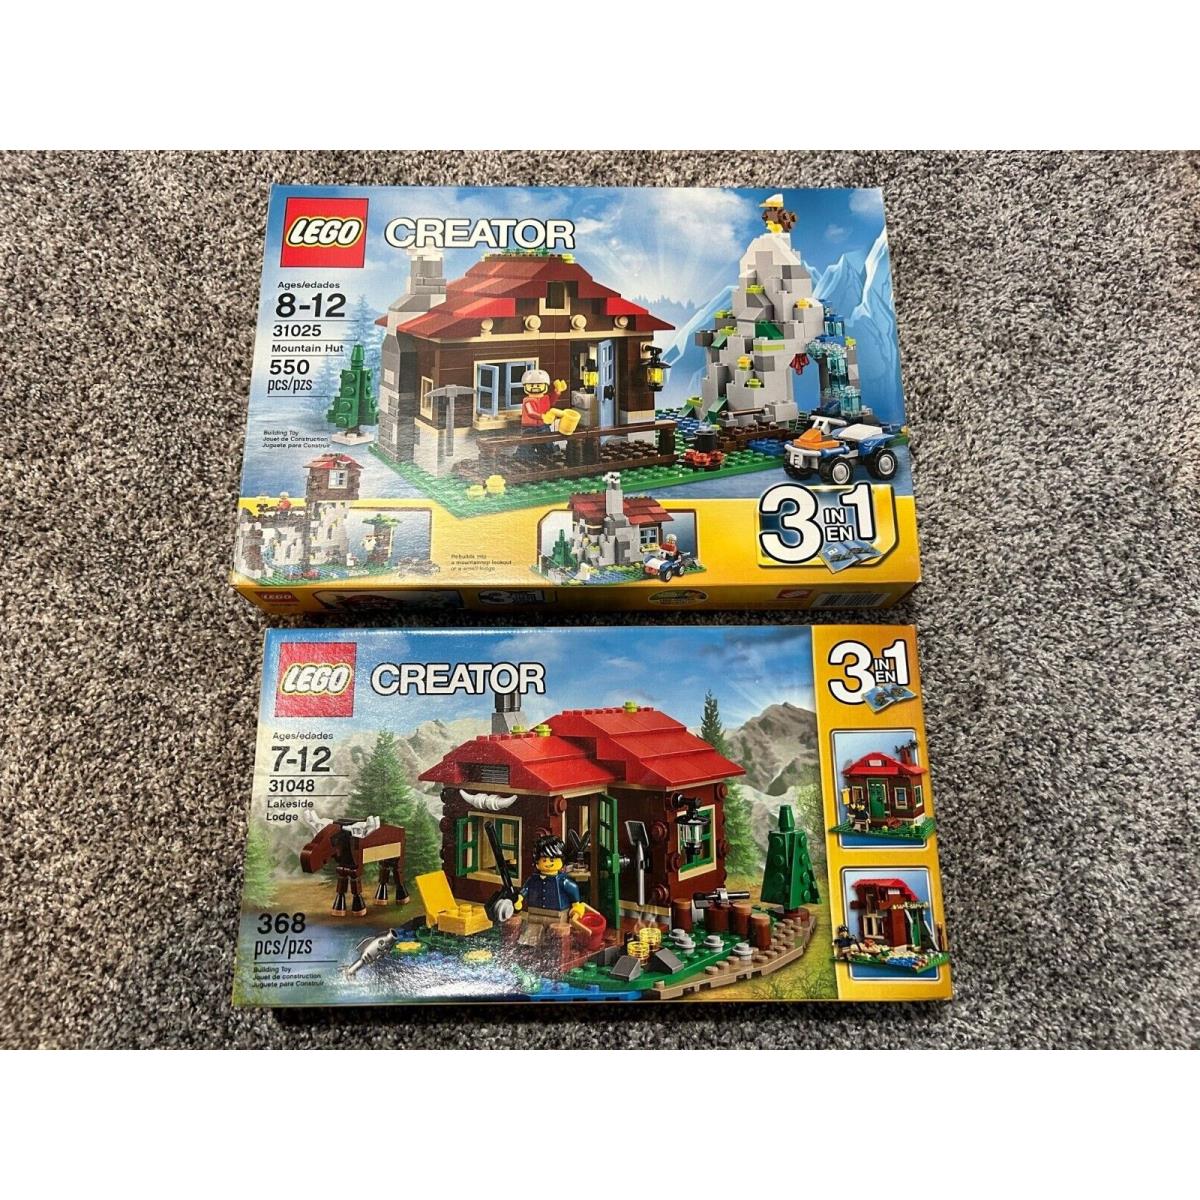 Lego Creator 3-in-1 Lakeside Lodge 31048 / Mountain Hut 31025 - Box